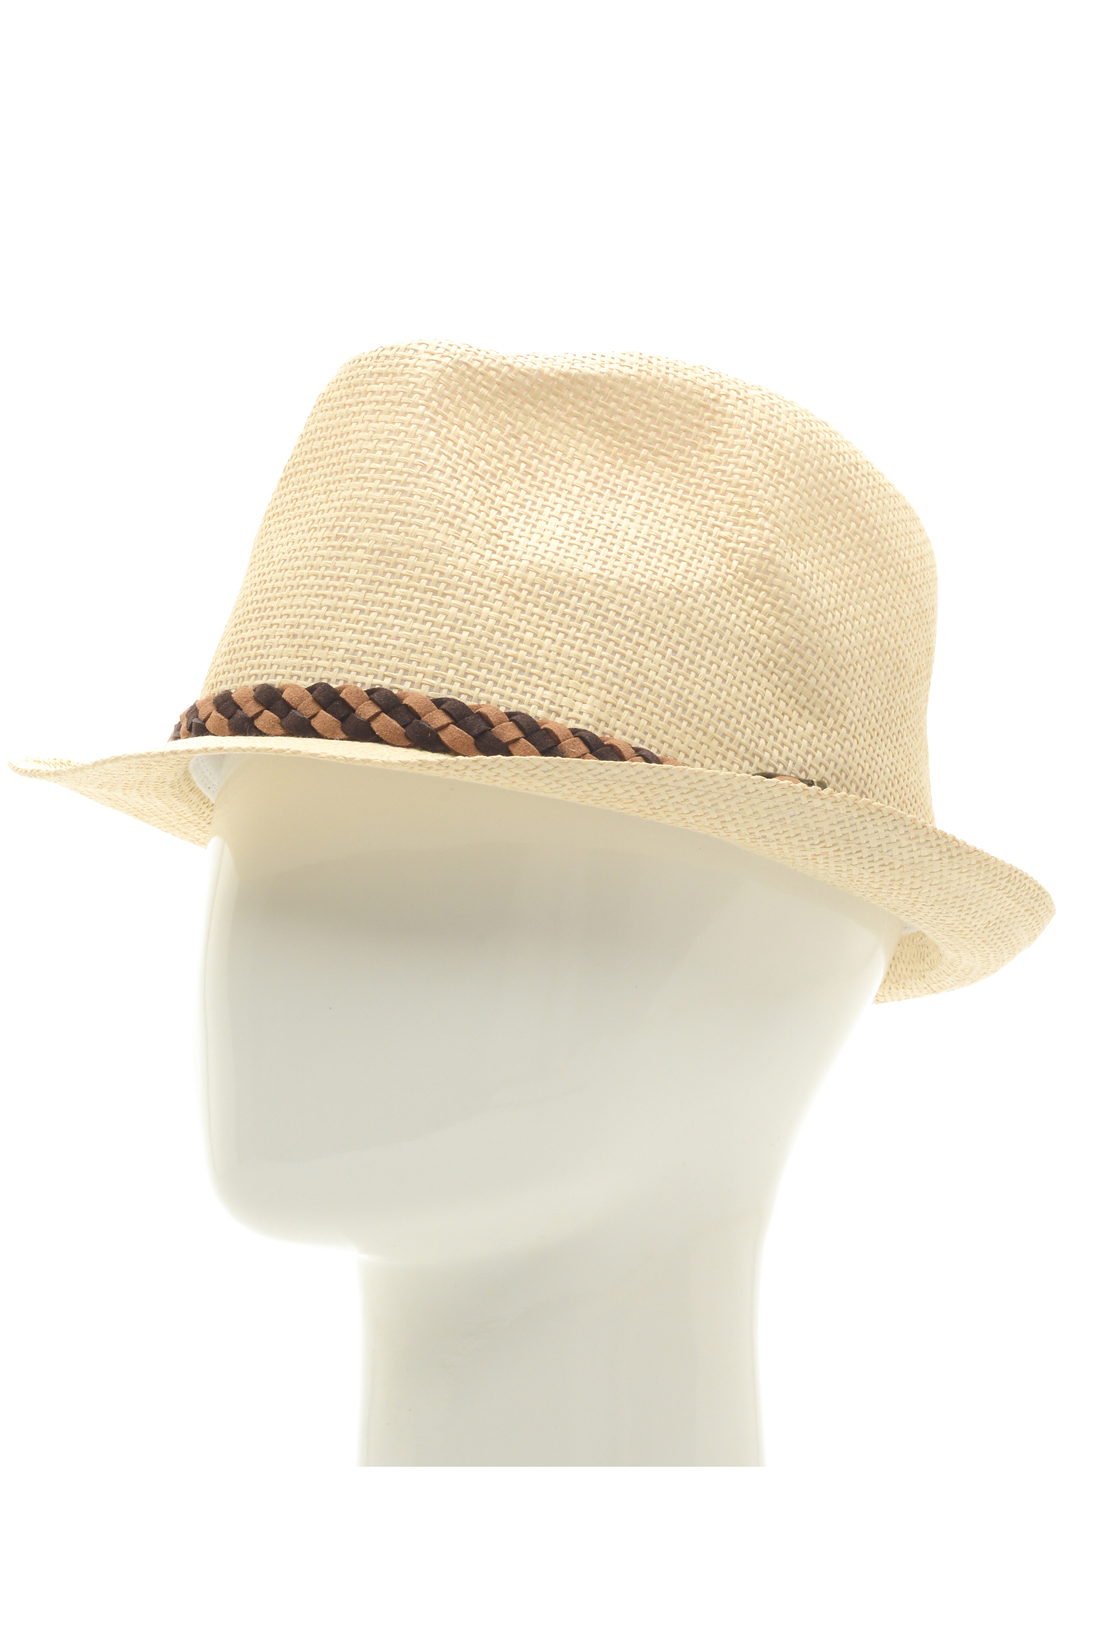 Шляпа с отделкой из кожи (арт. baon B848001), размер Б/р 58, цвет бежевый